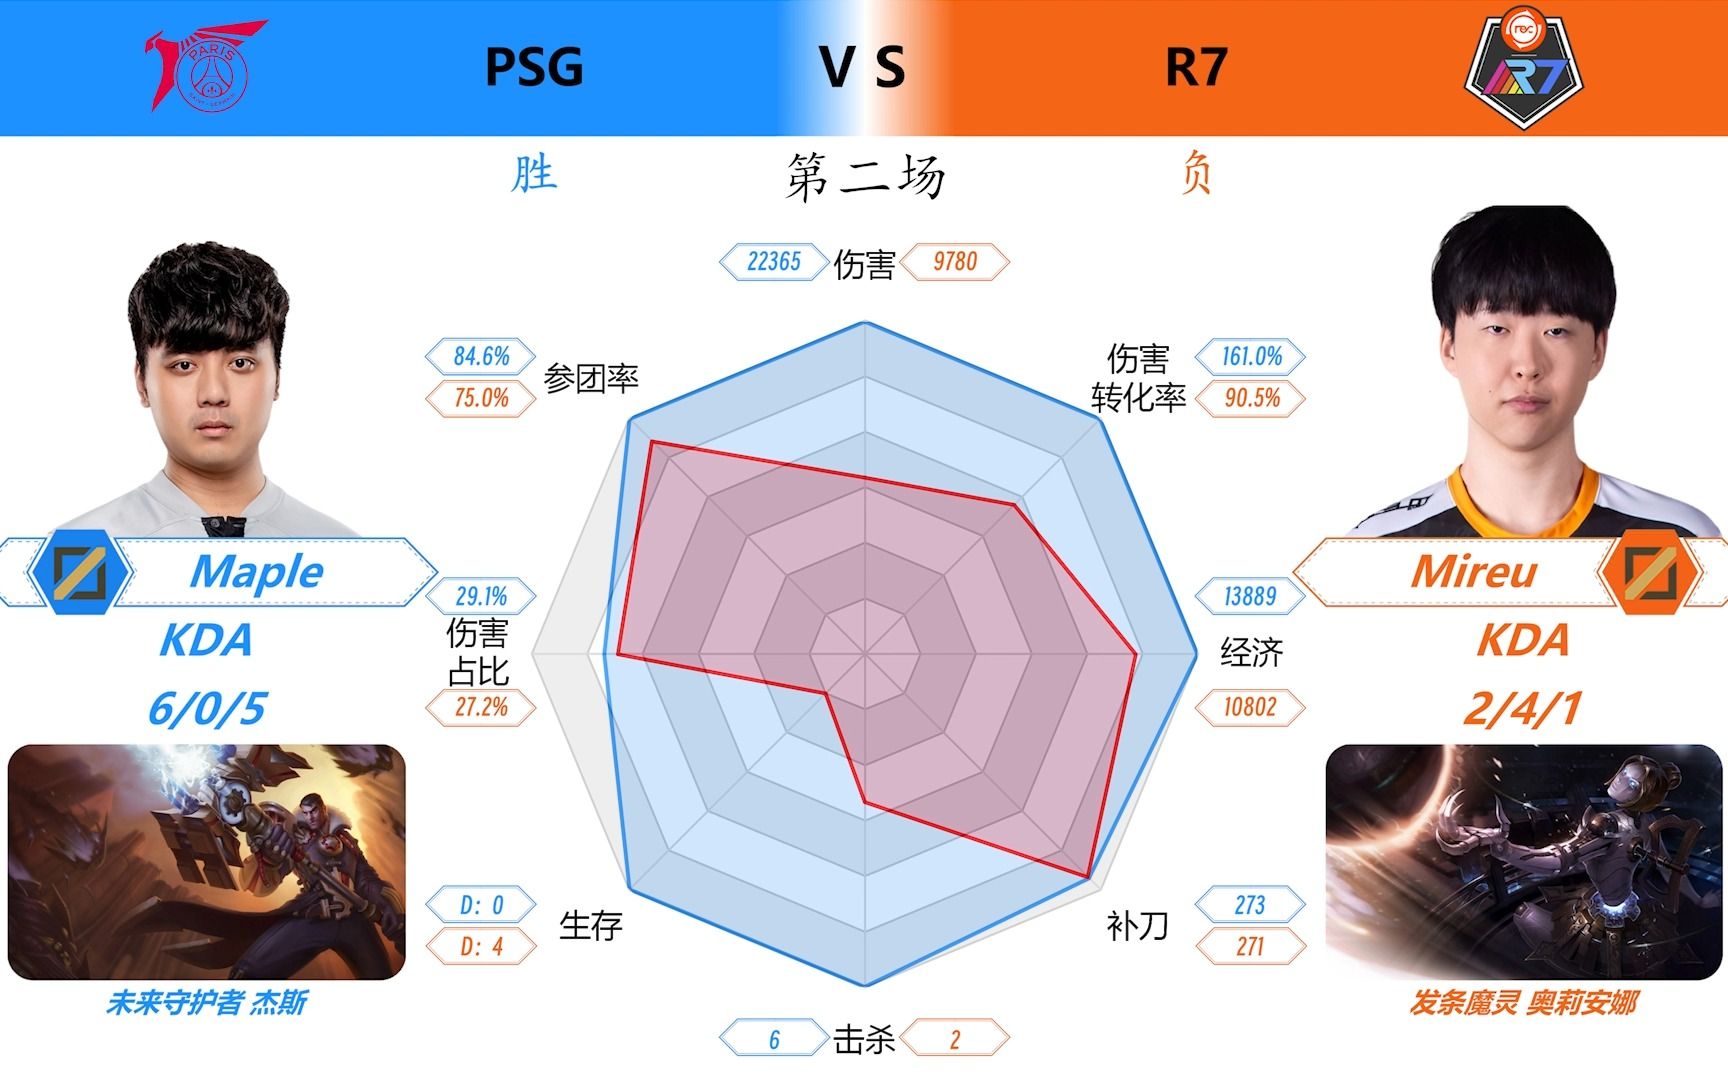 S13入围赛 PSG 2:0 R7 对位数据雷达图+虎扑评分